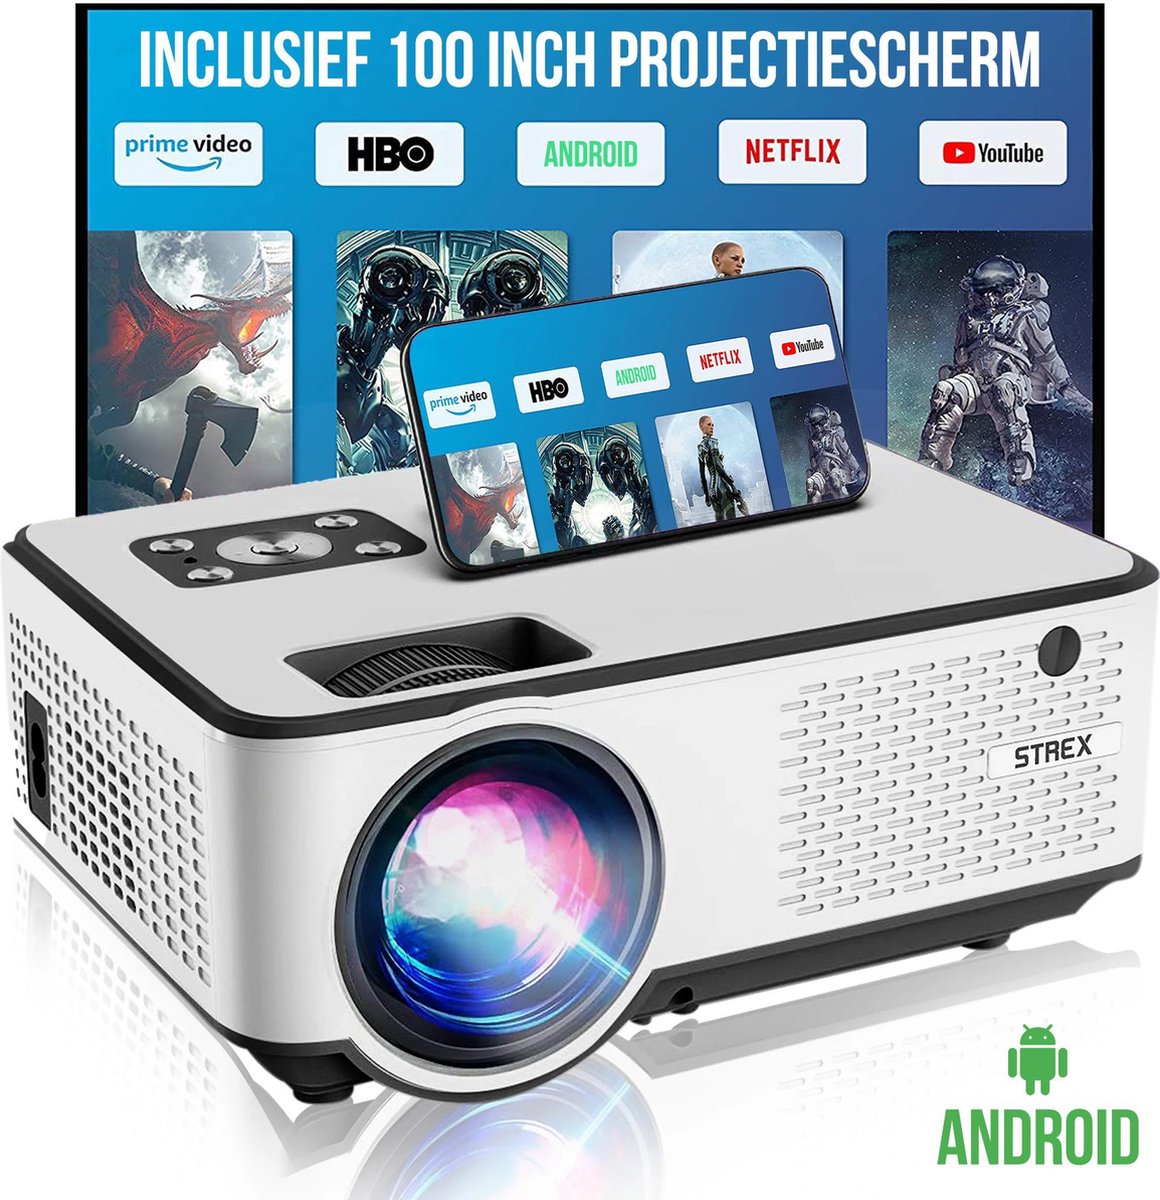 iMoshion Mini-projecteur - Mini-vidéoprojecteur WiFi - 3400 lumens - Gris